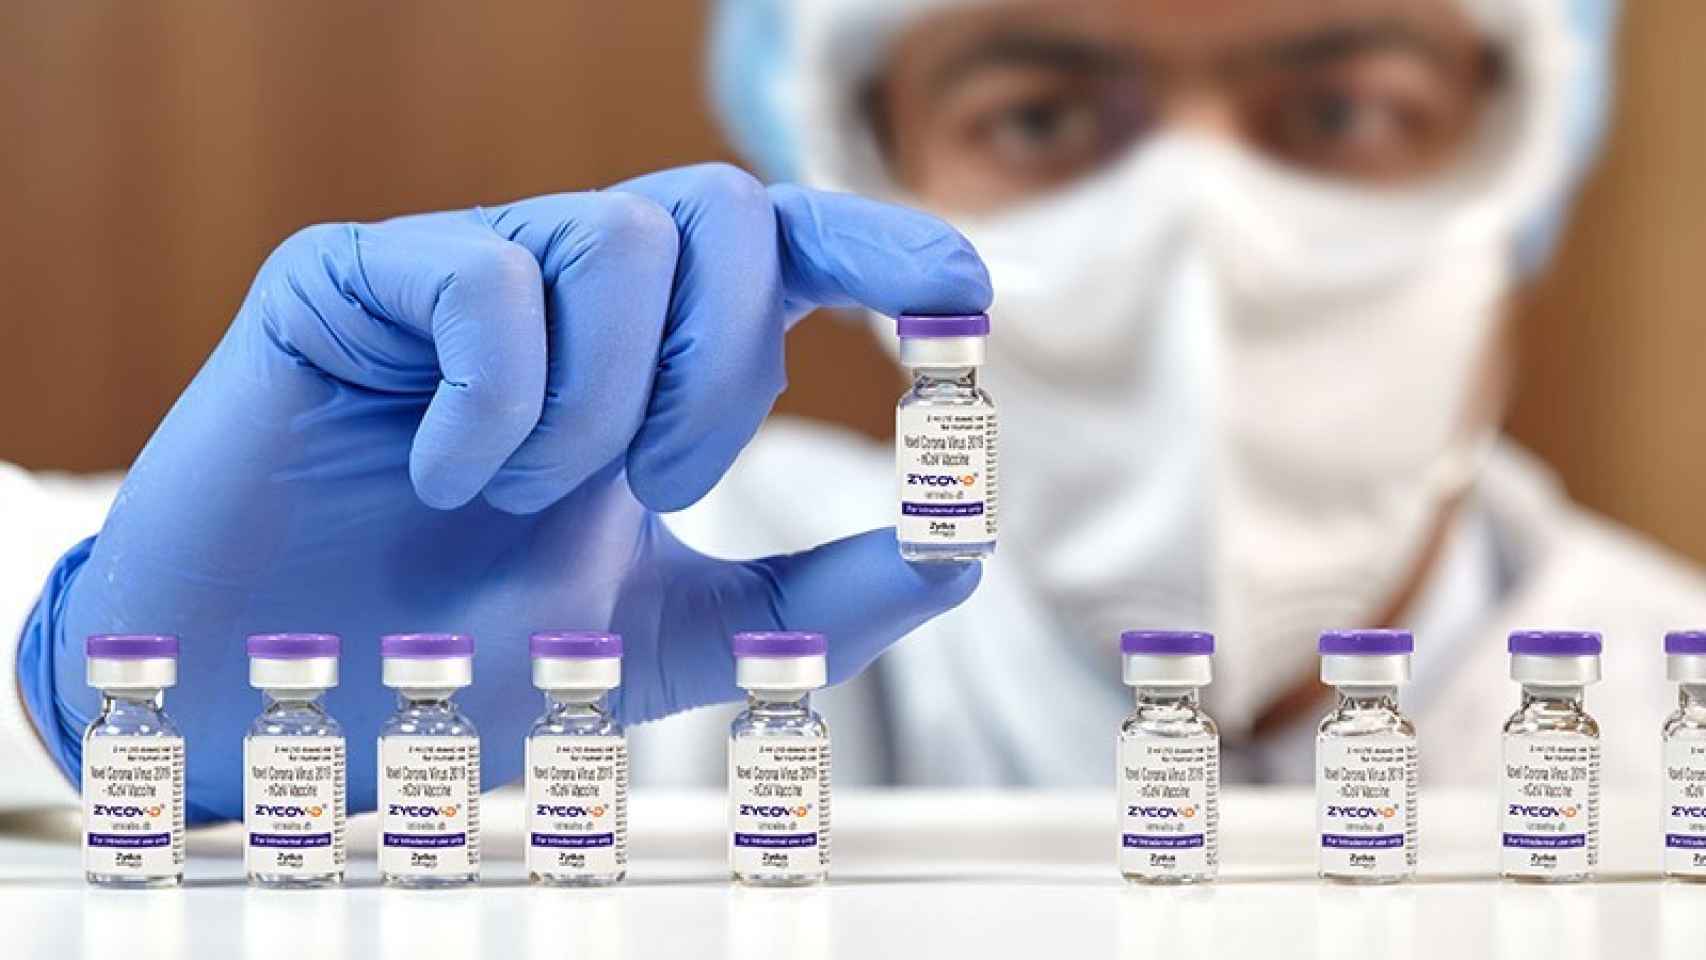 El laboratorio fabricante anuncia que puede tener 50 millones de dosis para 2022.